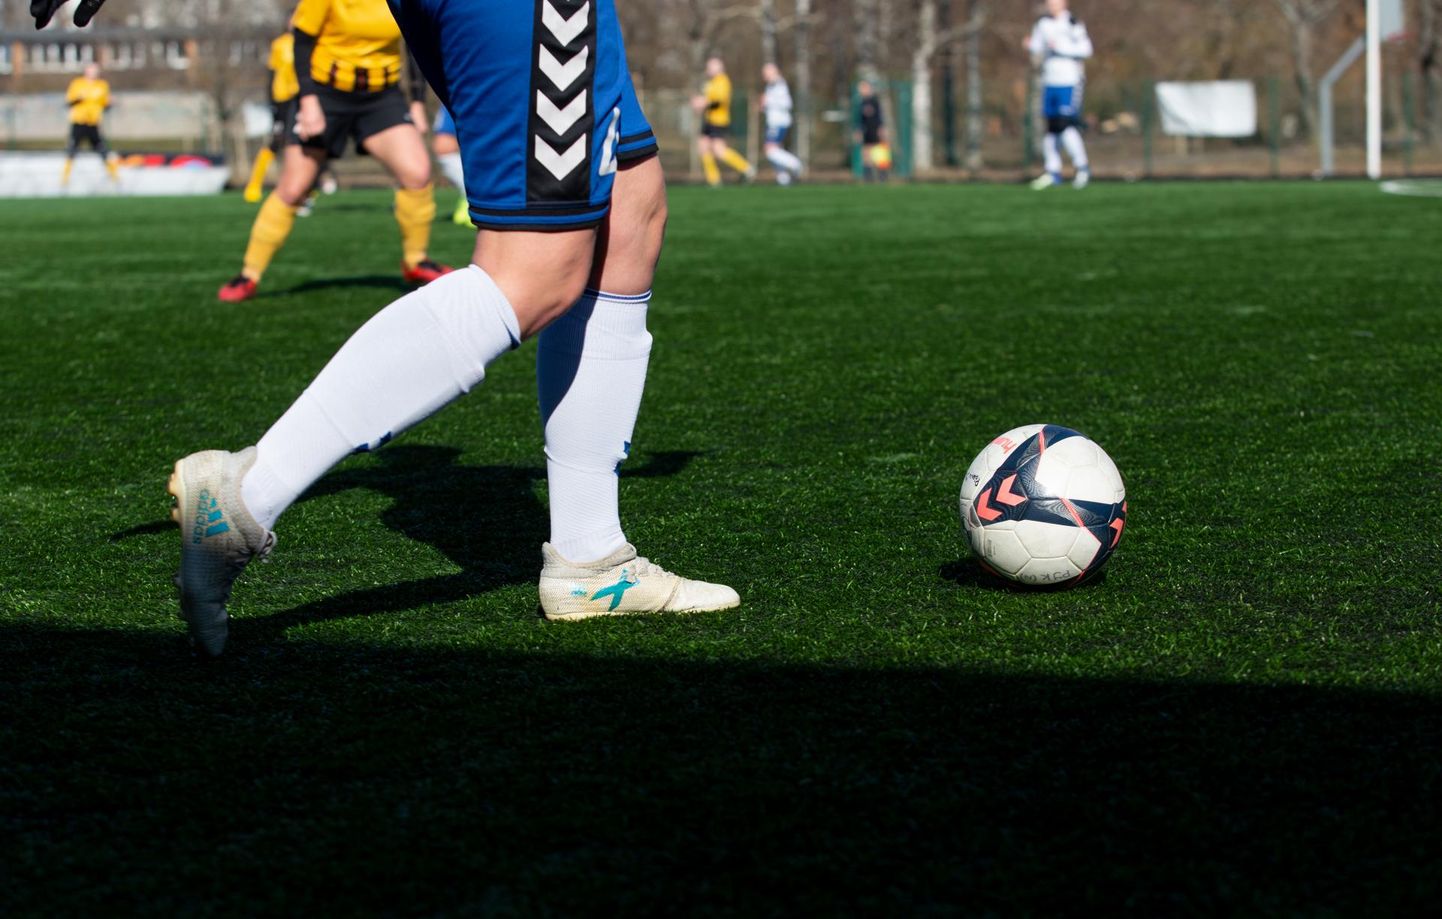 Riigi esivõistlustel jalgpallis on läänevirulastest kõrgeimal liigatasemel esindatud sellel aastal Rakvere JK Tarvas naiskond, kes kuulub esiliigasse. Jalgpalli-Tarva mehiseid heitlusi näeb esiliiga B tasandil.